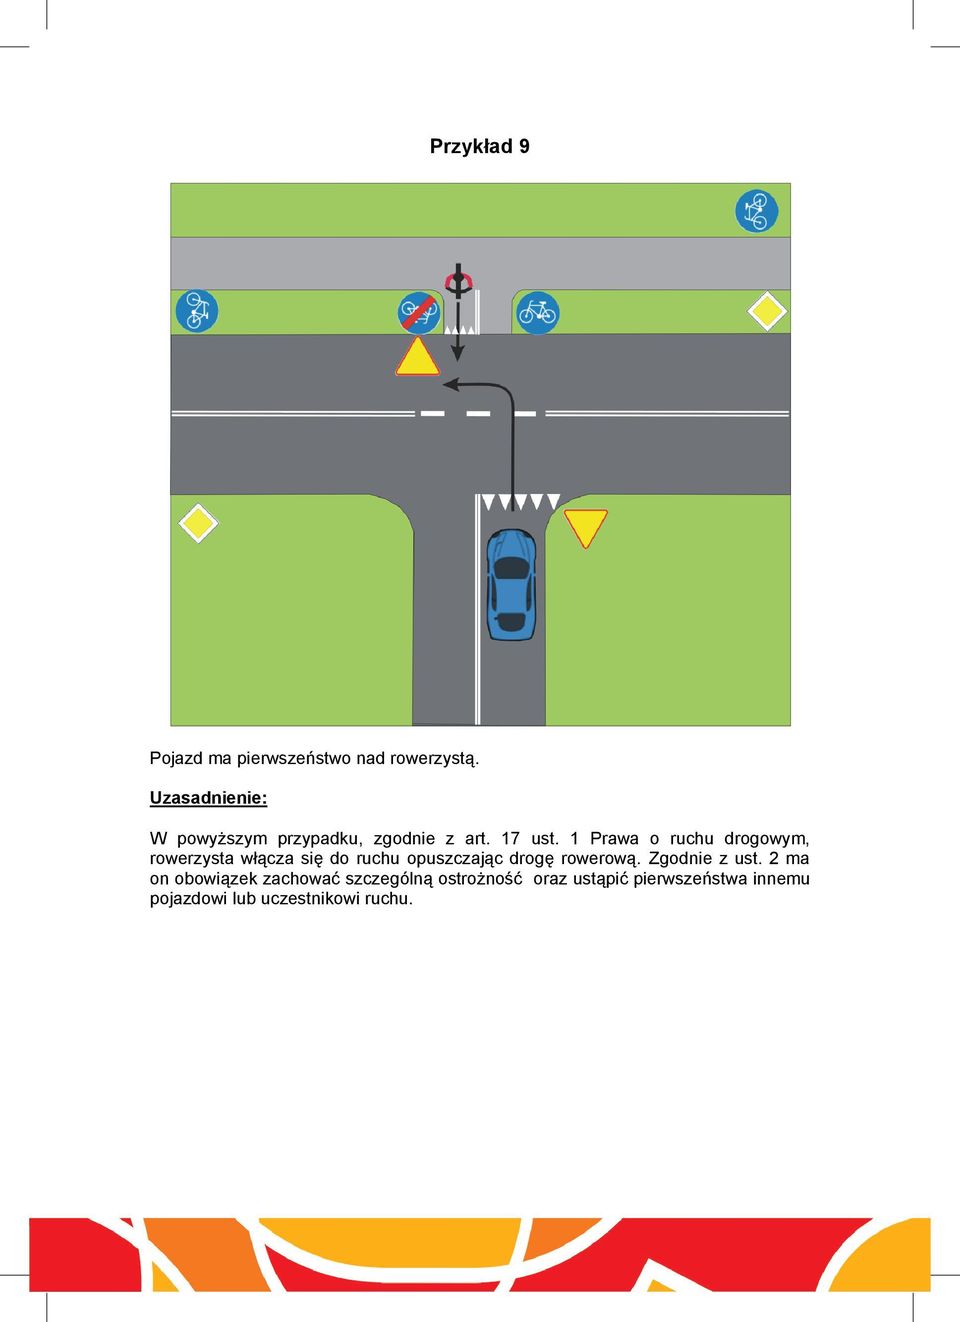 1 Prawa o ruchu drogowym, rowerzysta włącza się do ruchu opuszczając drogę